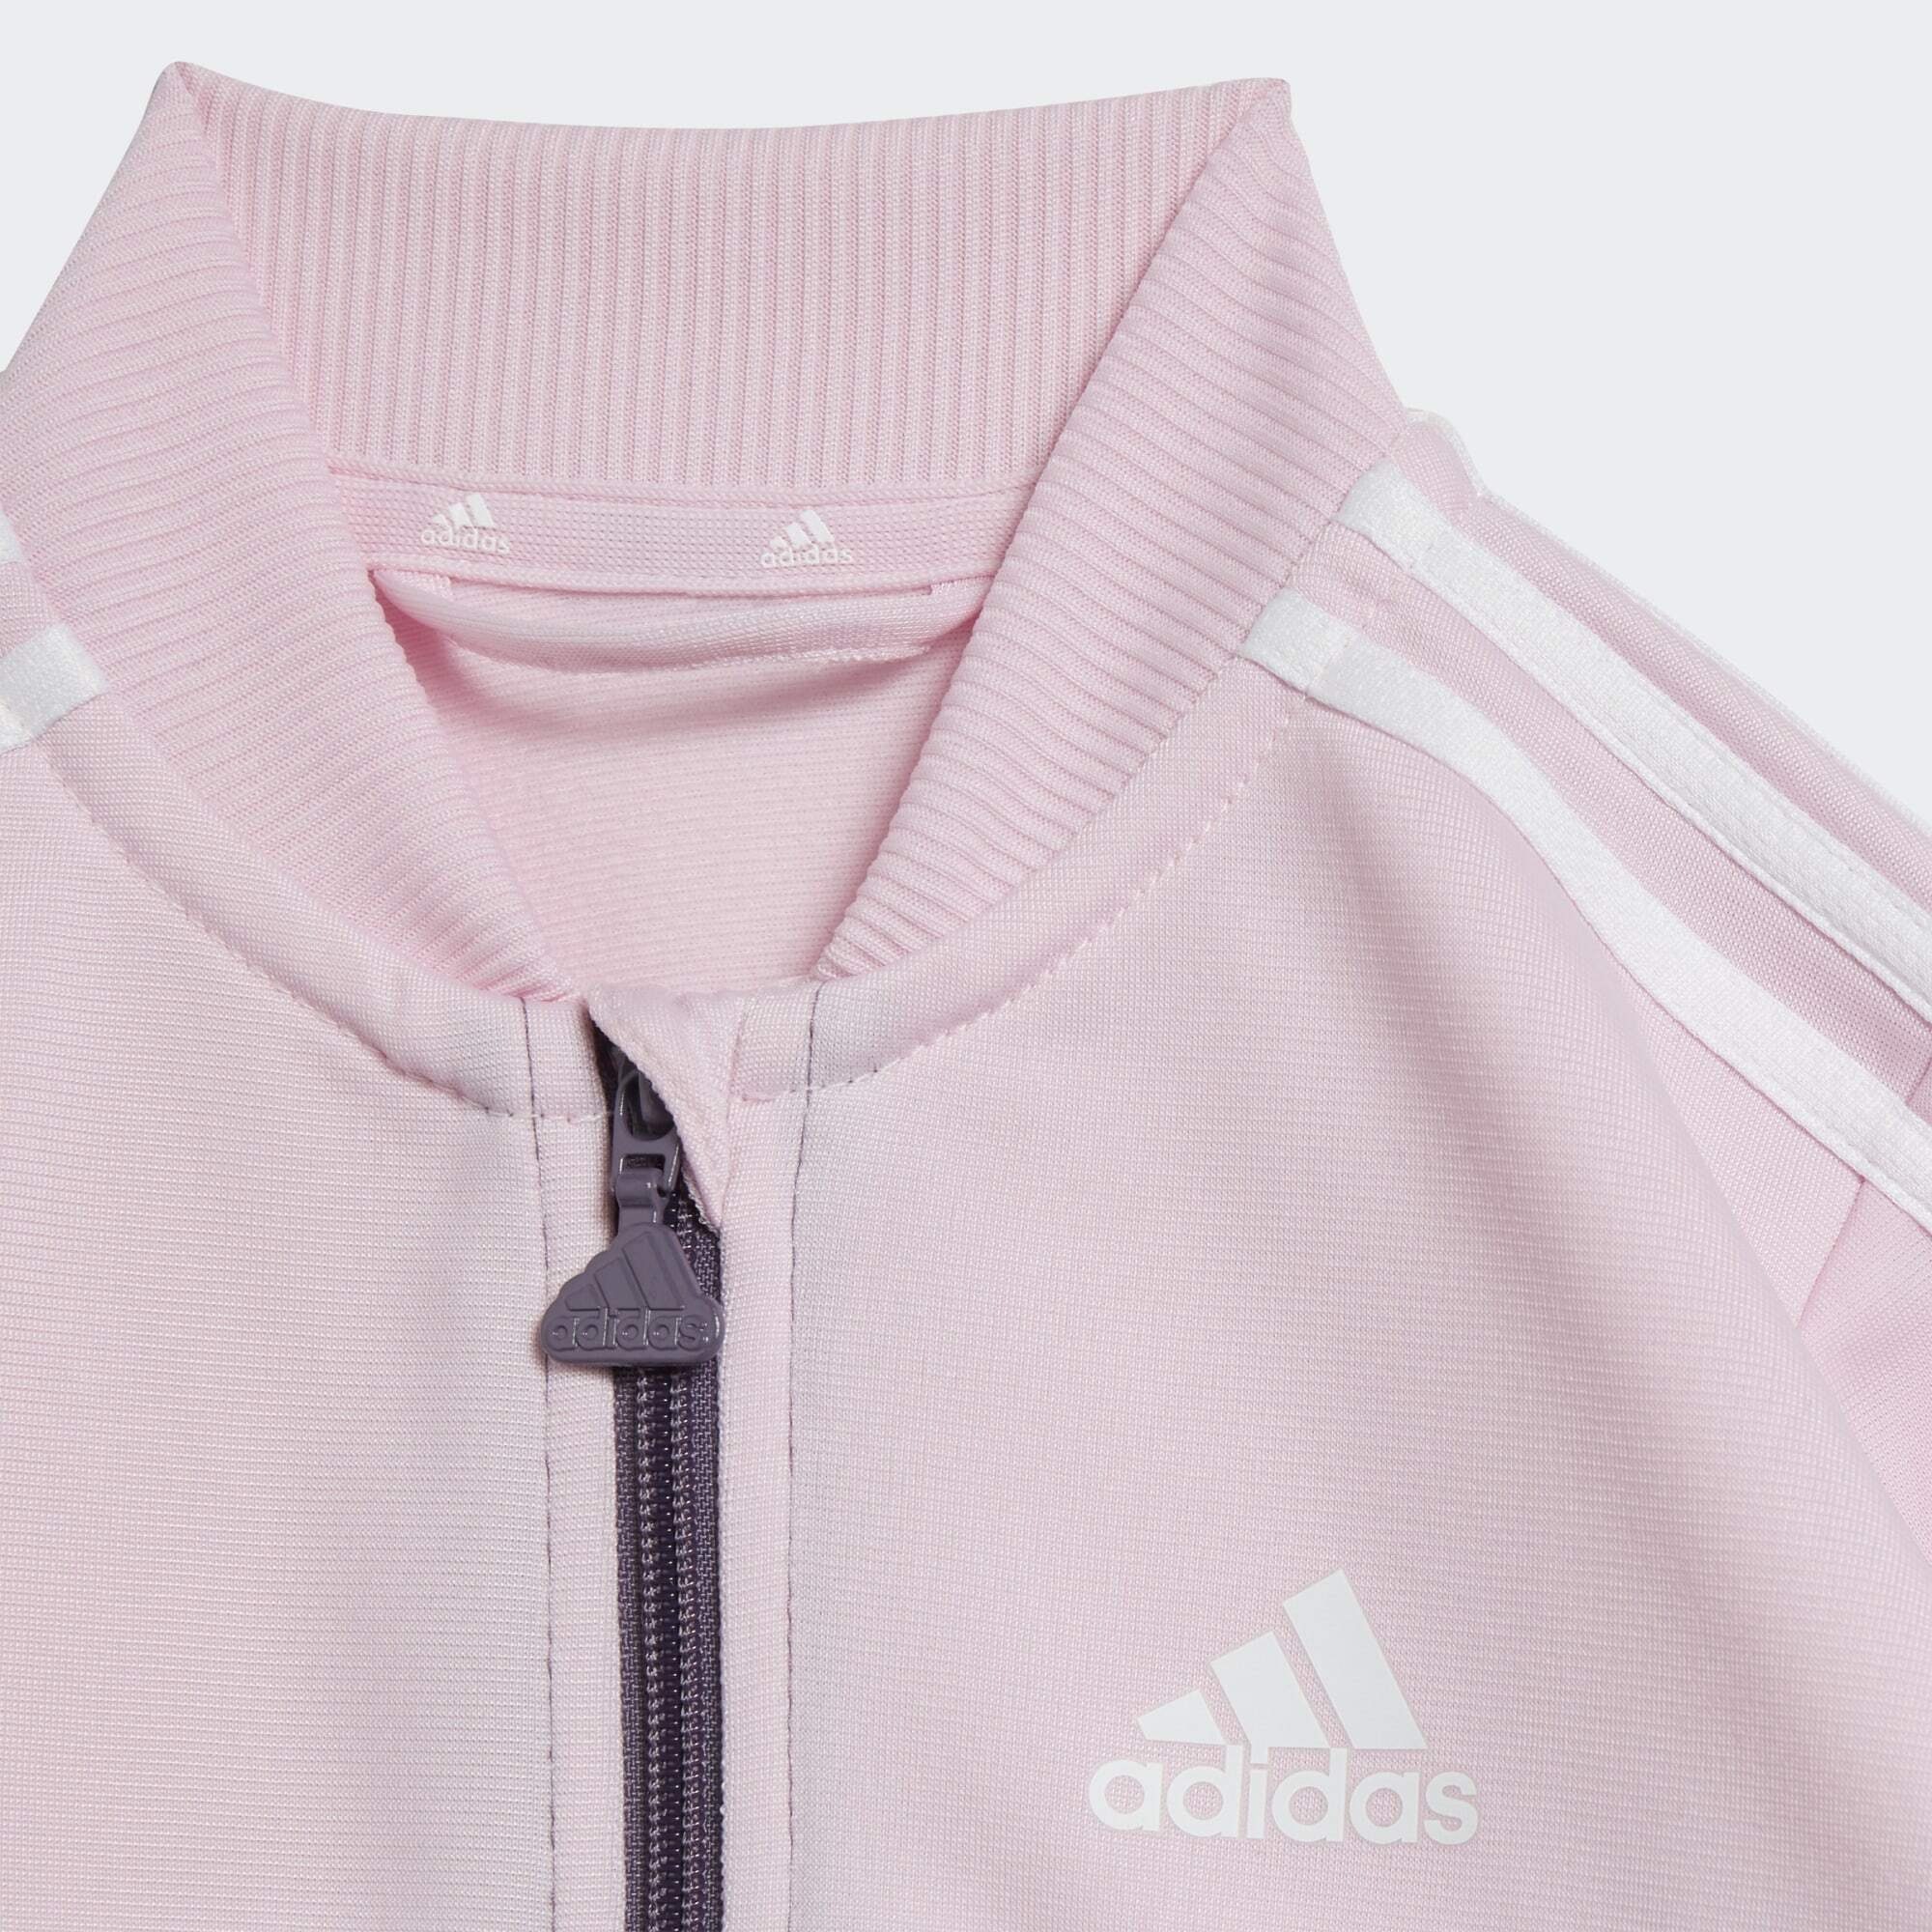 adidas Sportswear Trainingsanzug / Shadow Violet Clear Pink / White